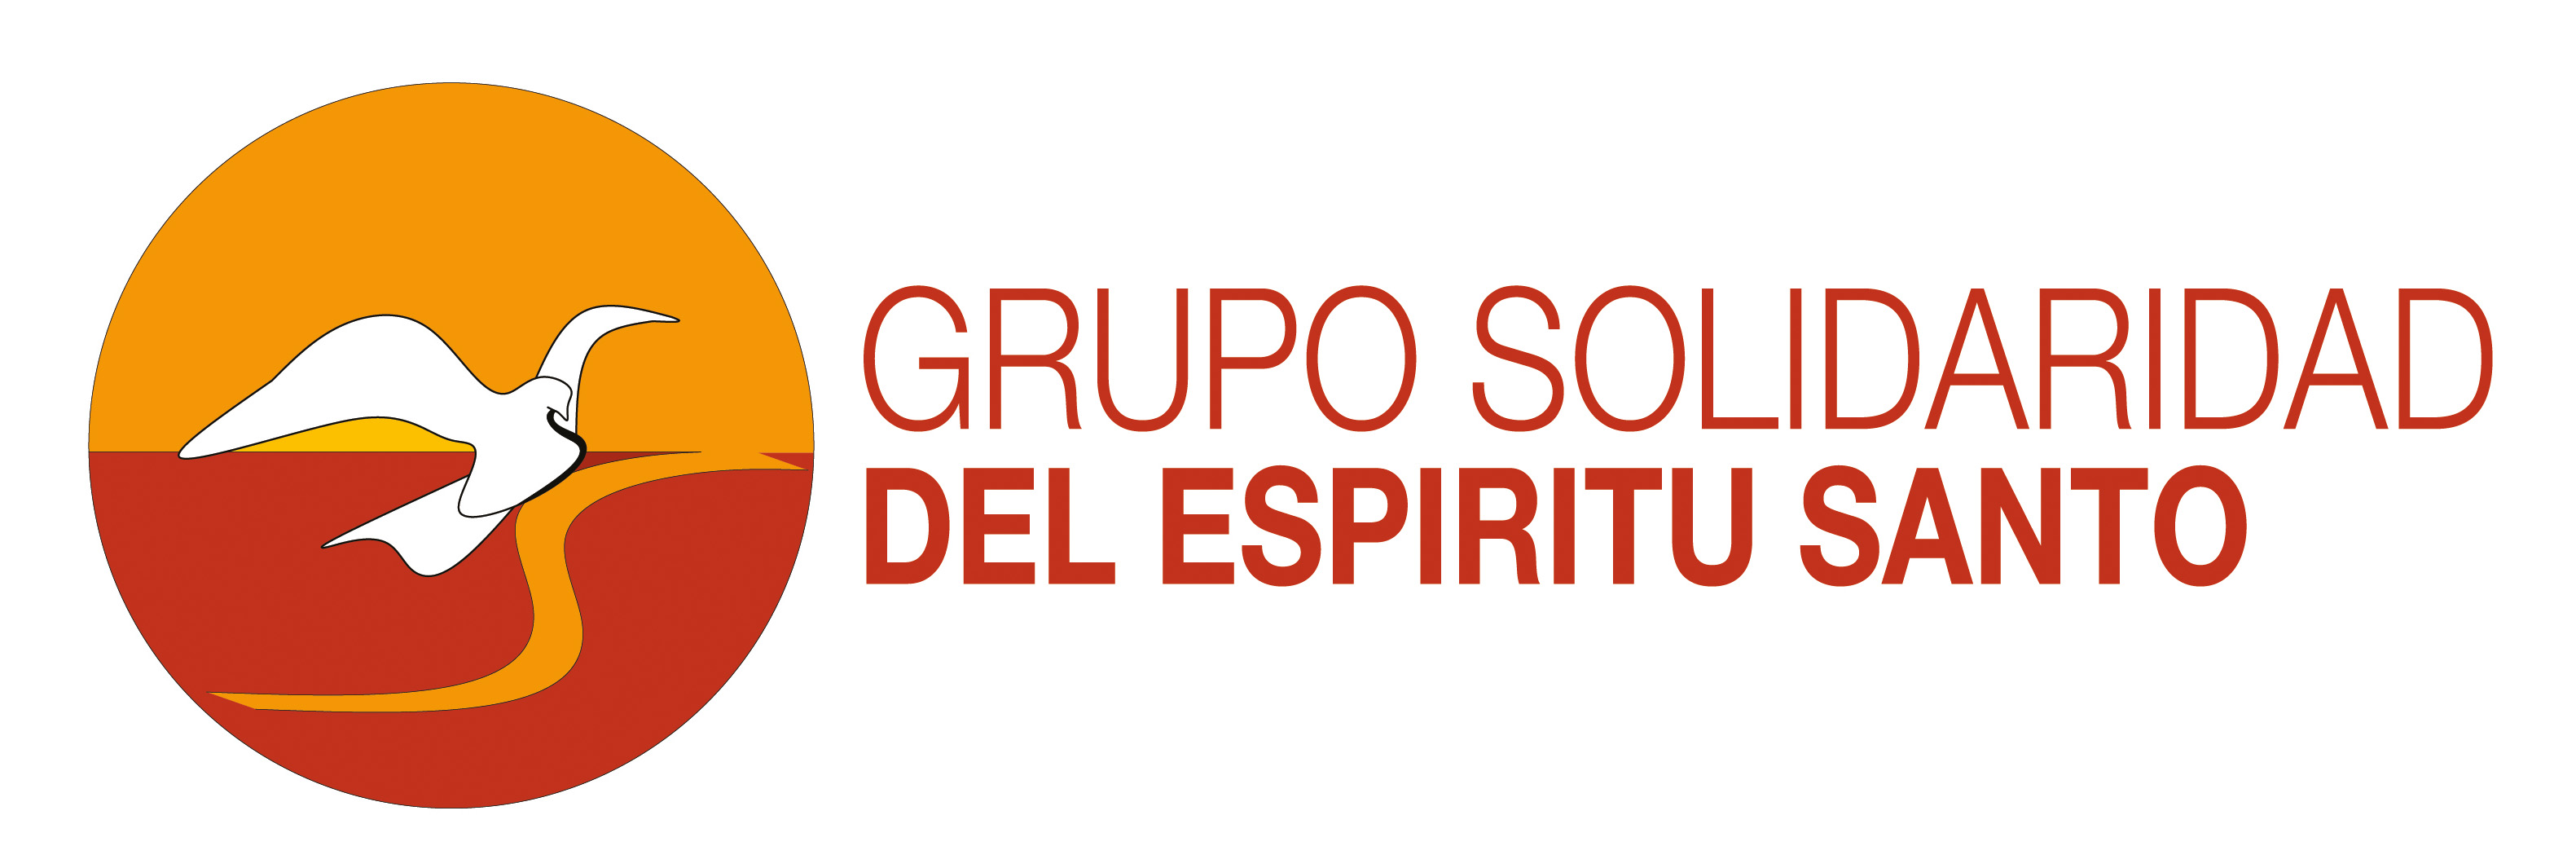 Grupo Solidaridad del Espíritu Santo - GSES